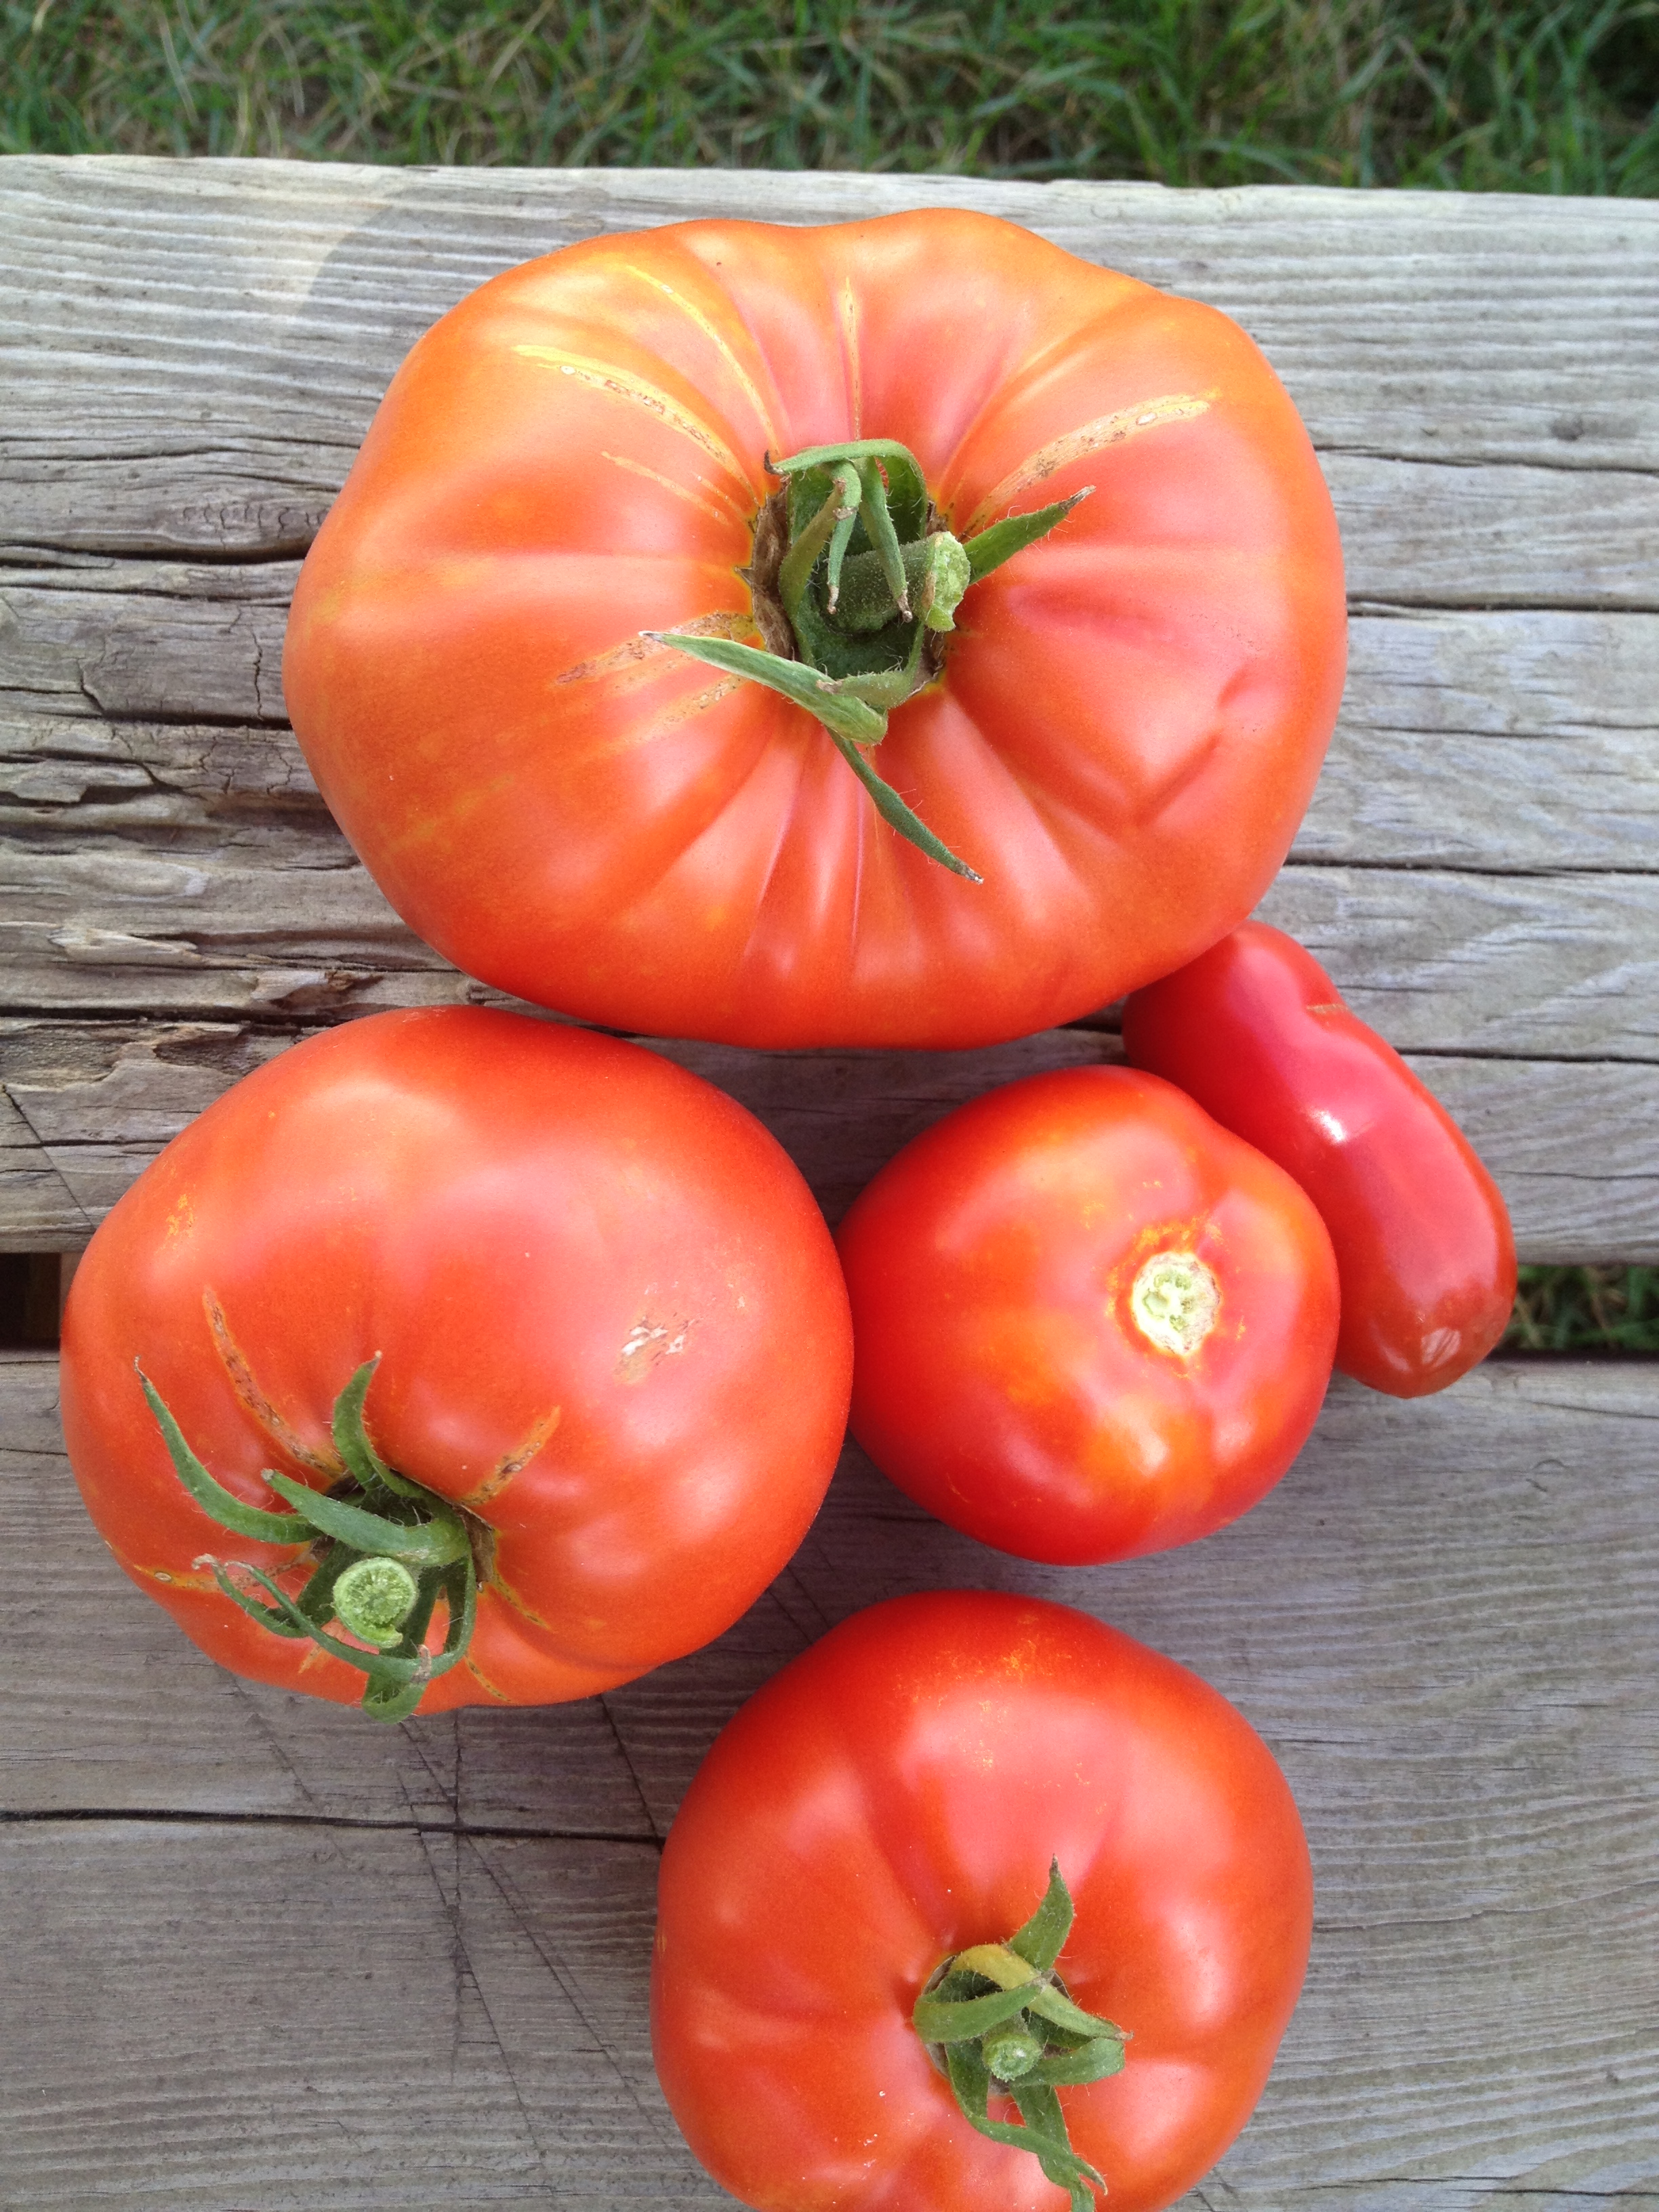 Http www.rodalesorganiclife.com sodas 90 svarų pomidorų-5 augalai